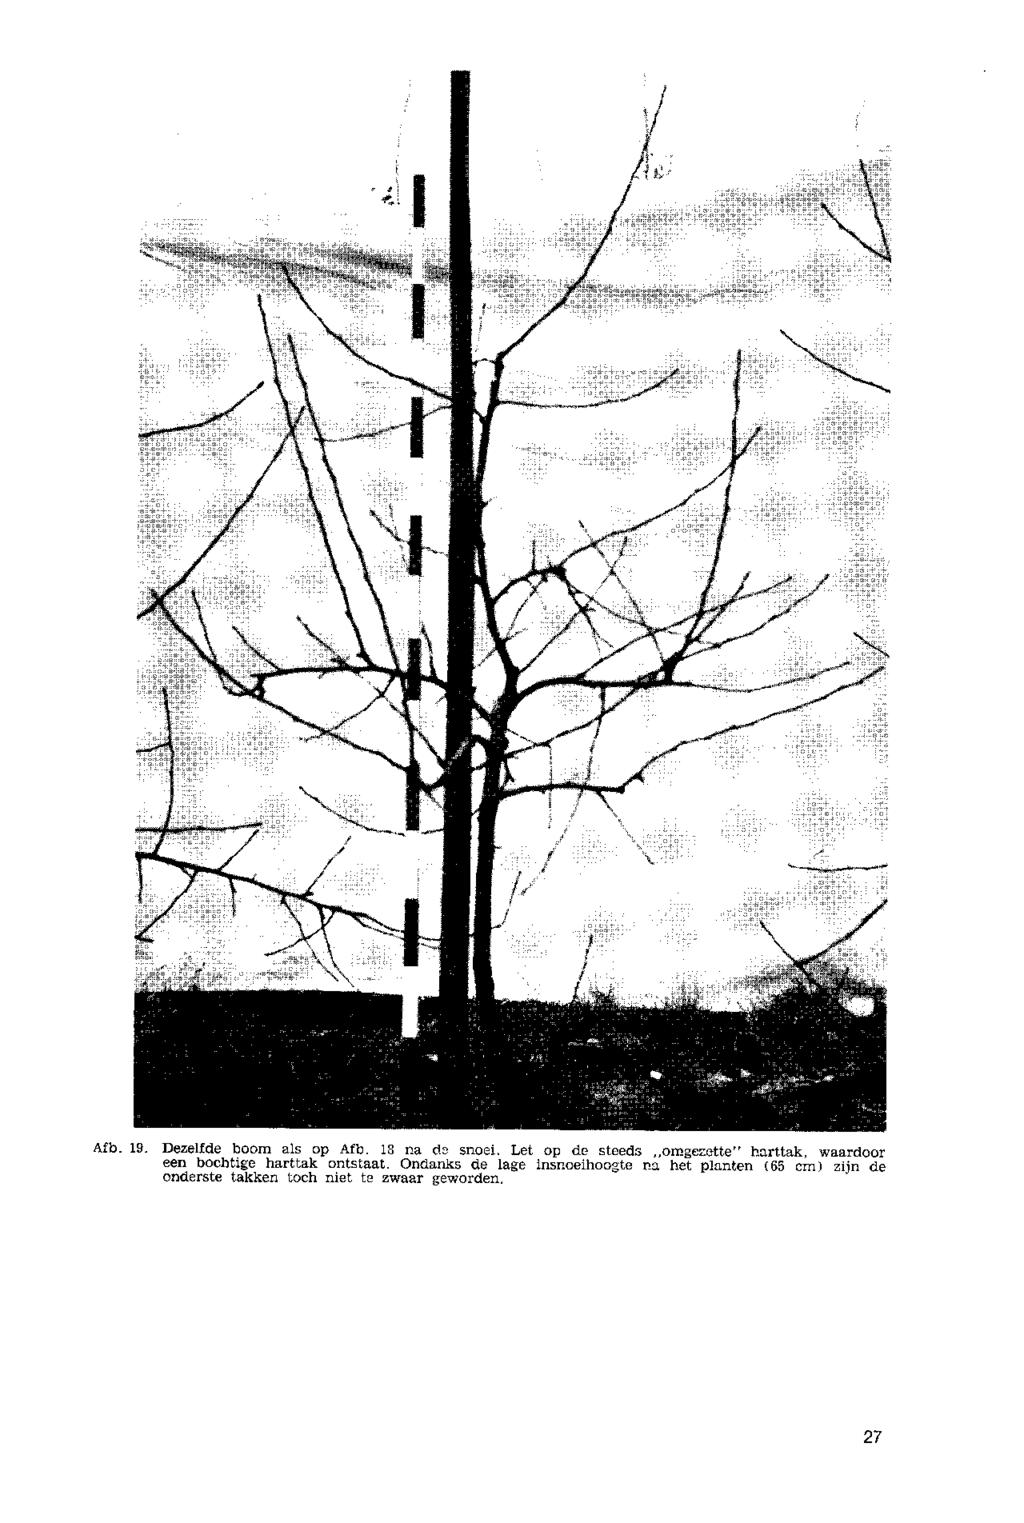 Afb. 19. Dezelfde boom als op Afb. 18 na de snoei.